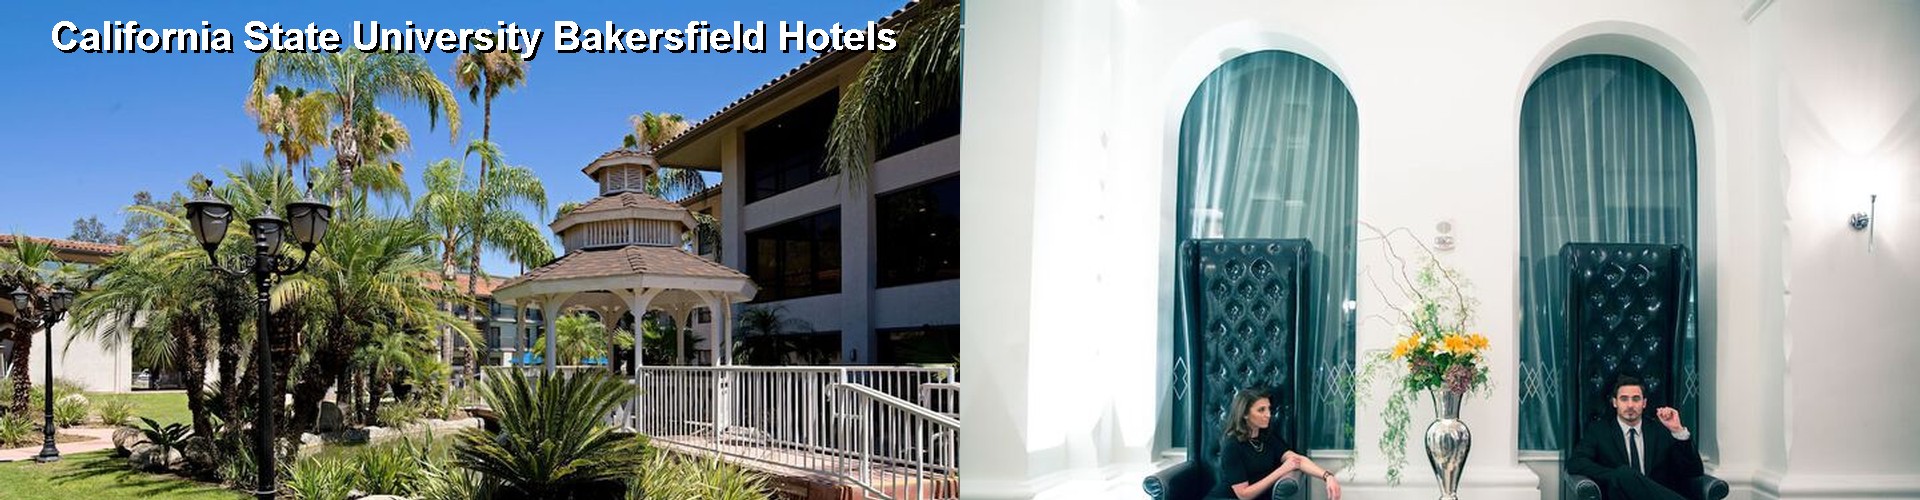 5 Best Hotels near California State University Bakersfield